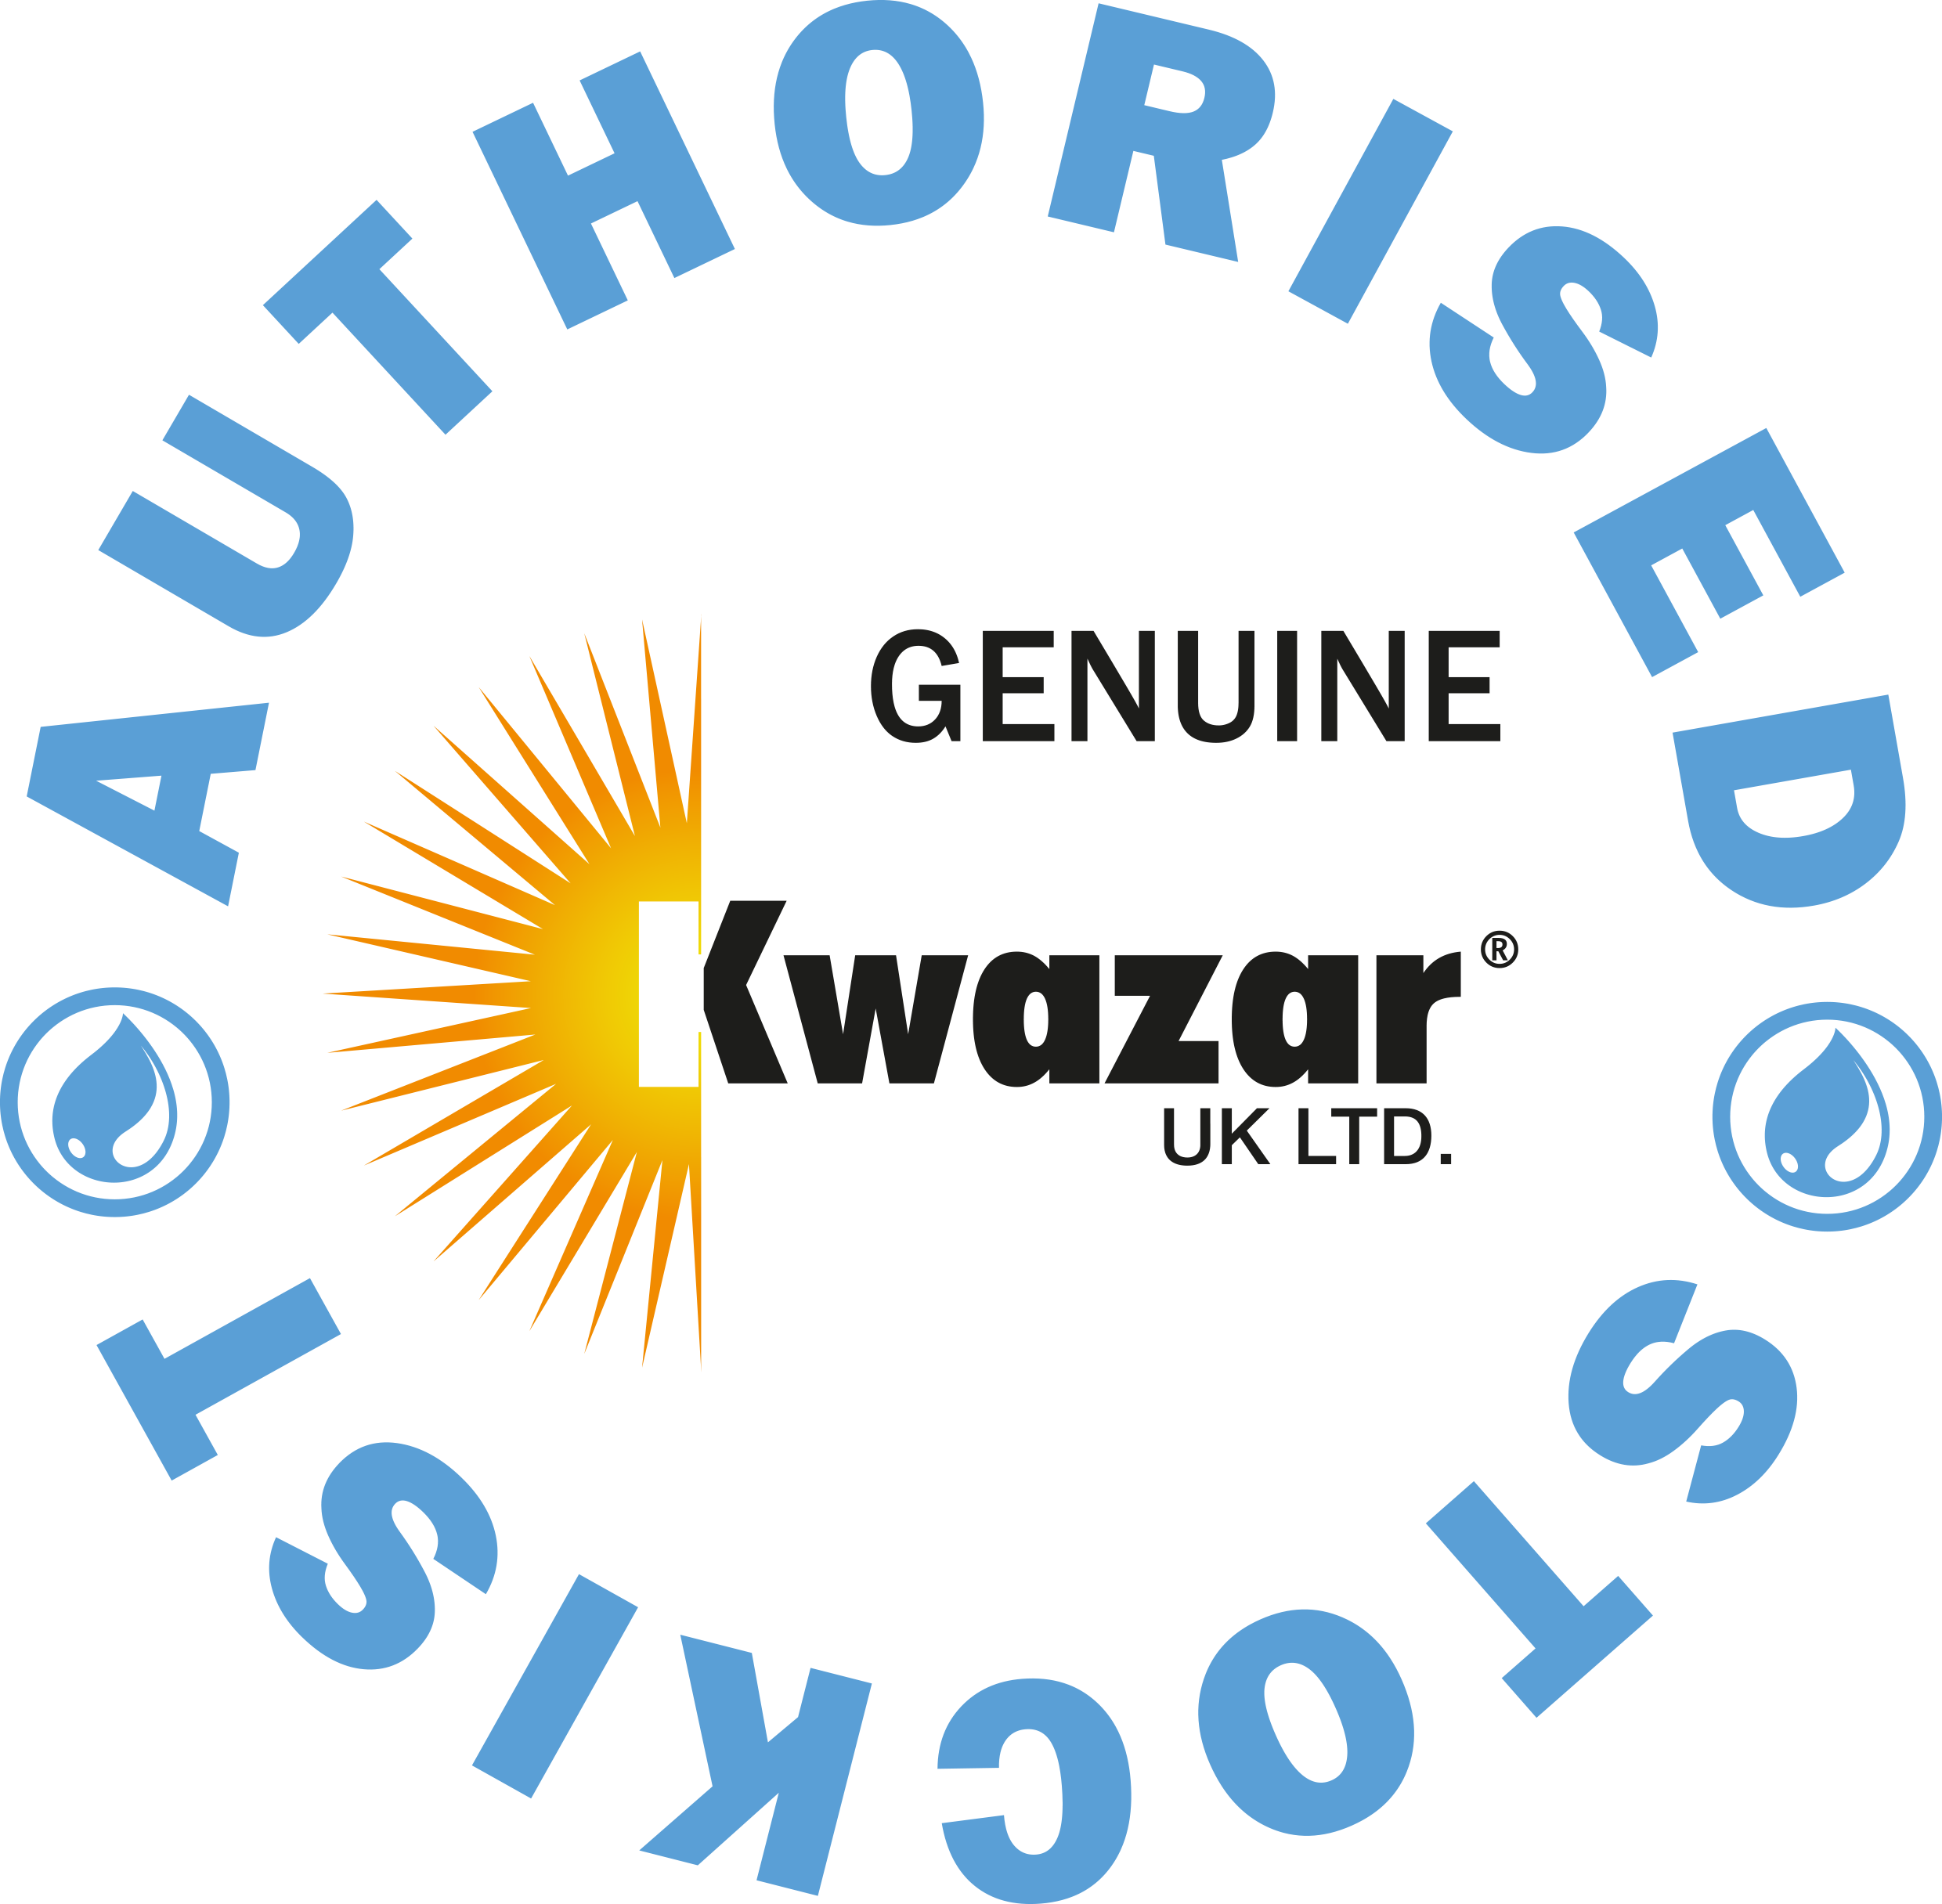 authorised UK Kwazar Stockist logo